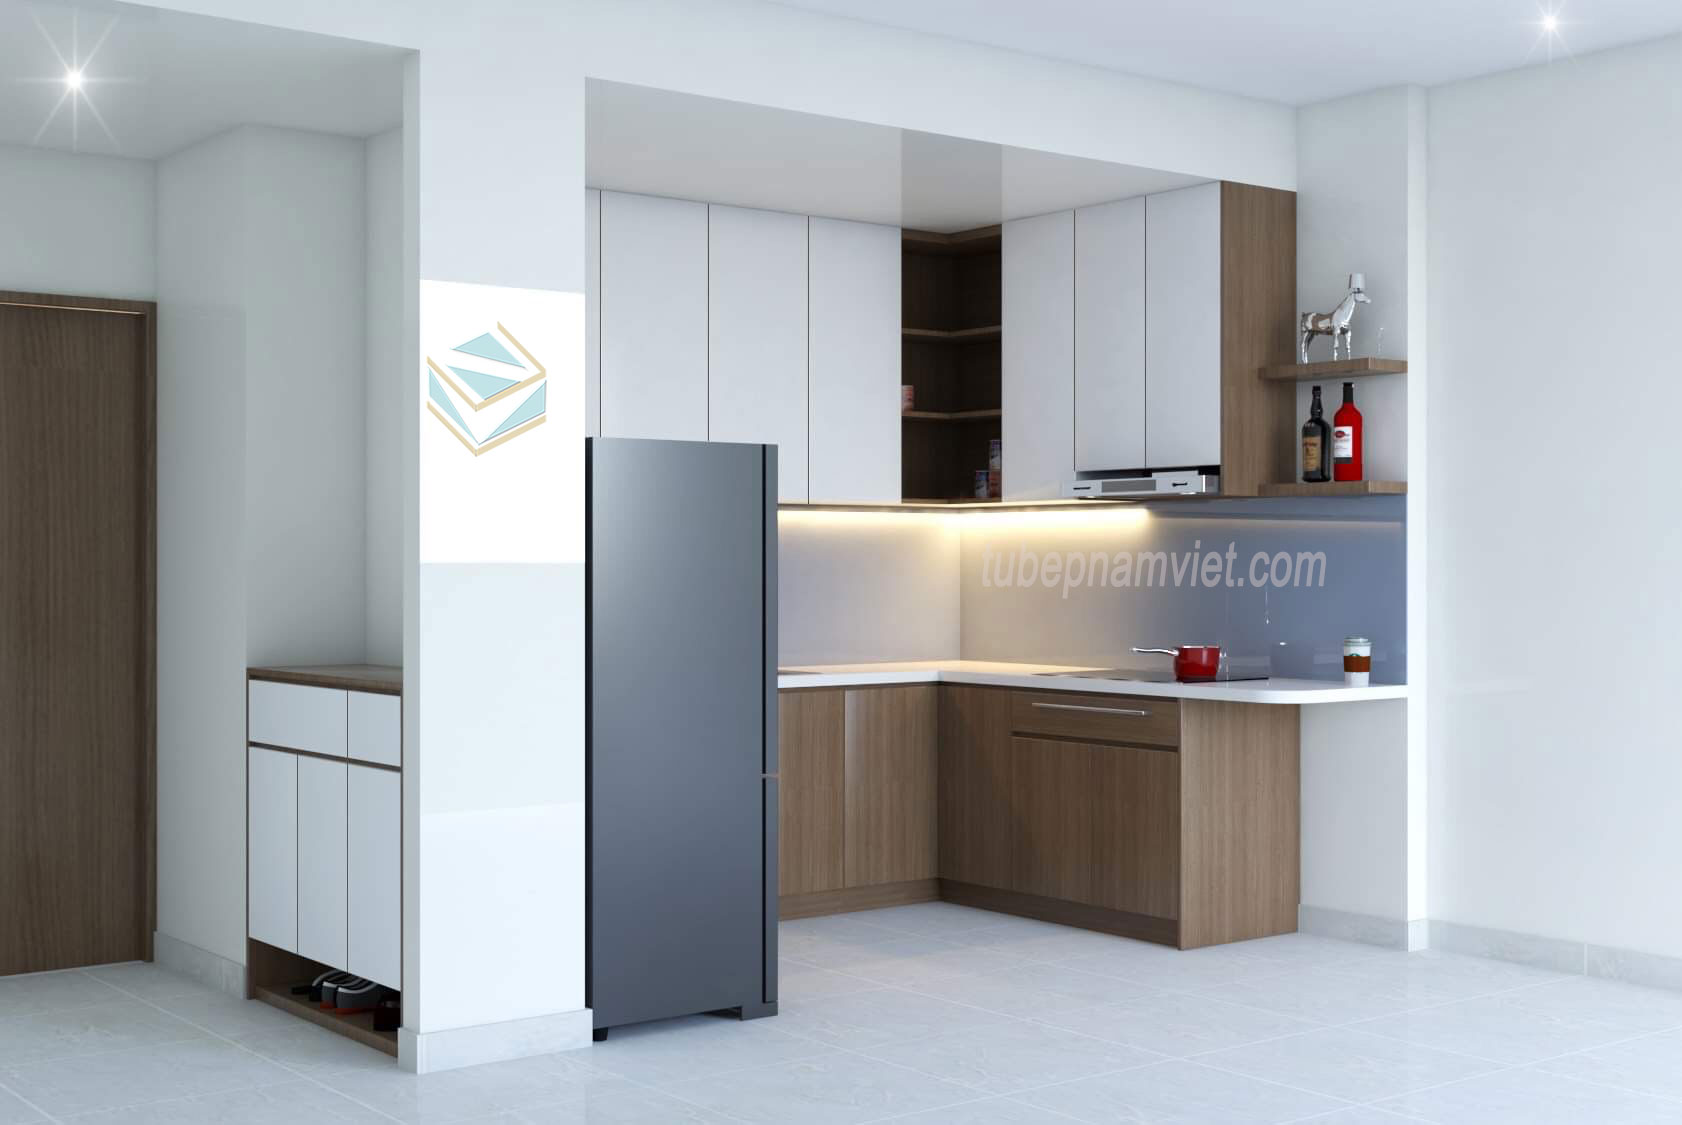 Mẫu tủ bếp gỗ công nghiệp căn hộ chung cư đơn giản dễ ứng dụng